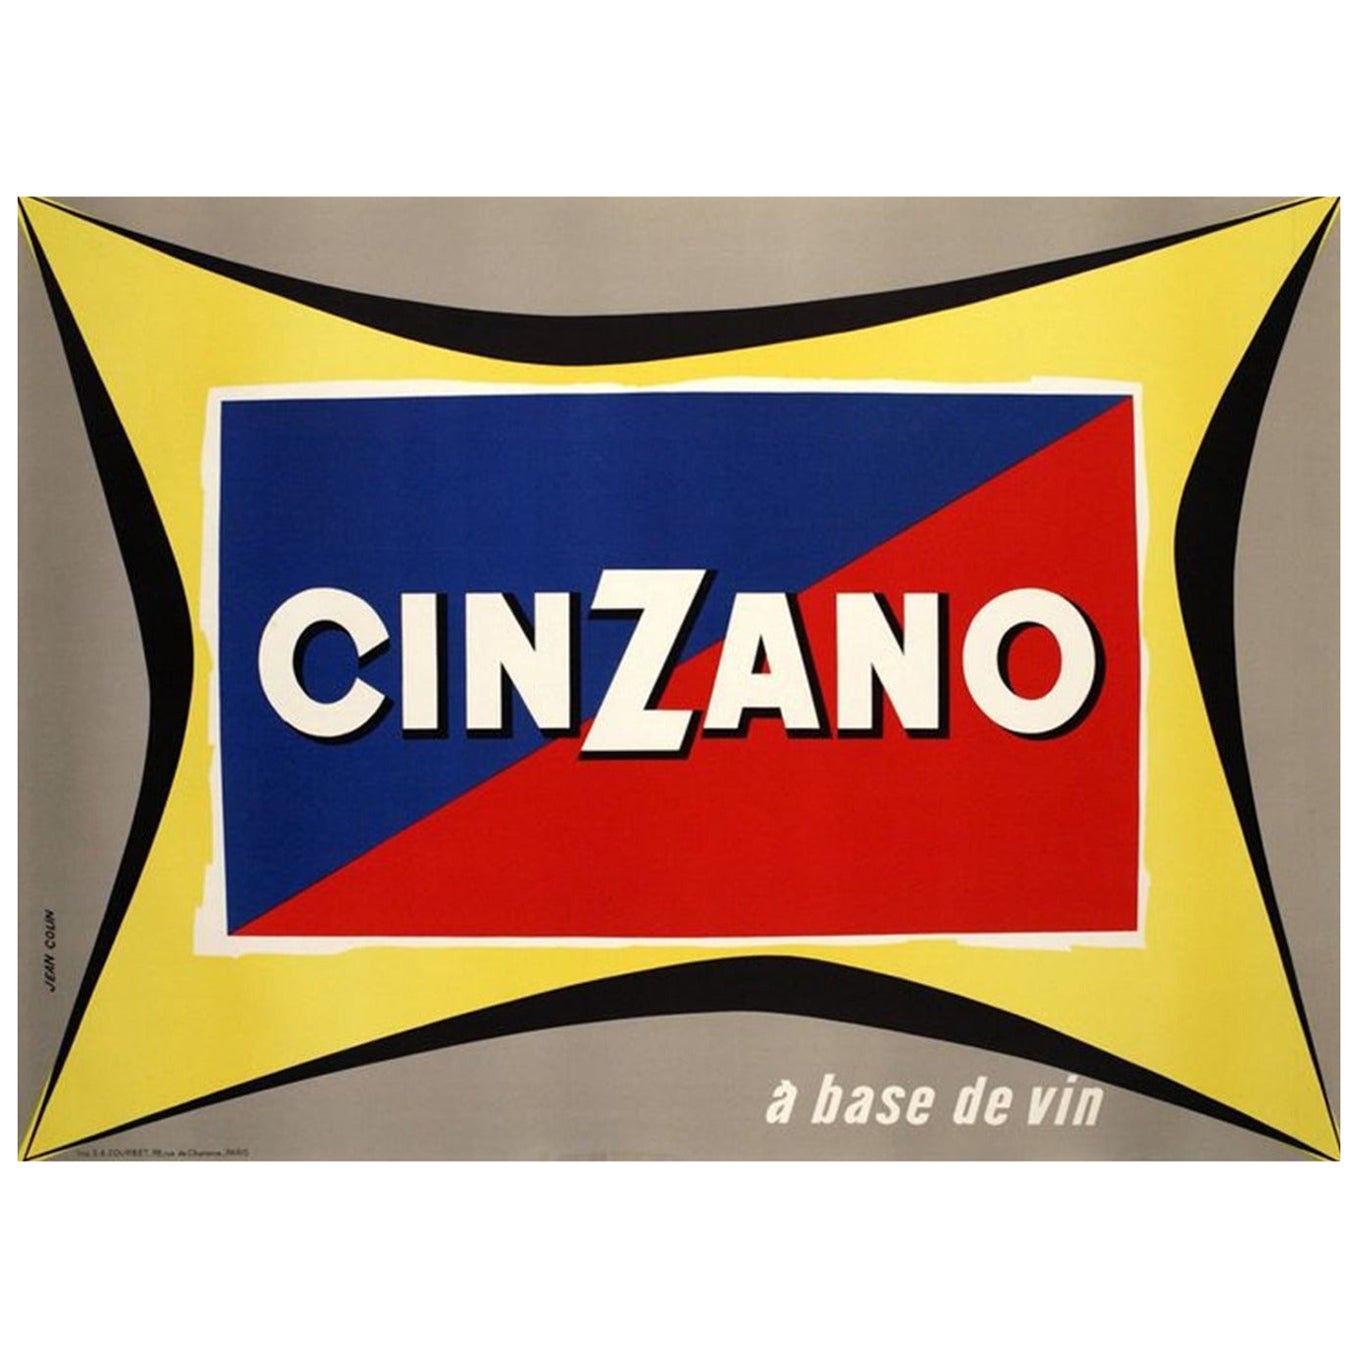 1952 Cinzano Original Vintage Poster For Sale